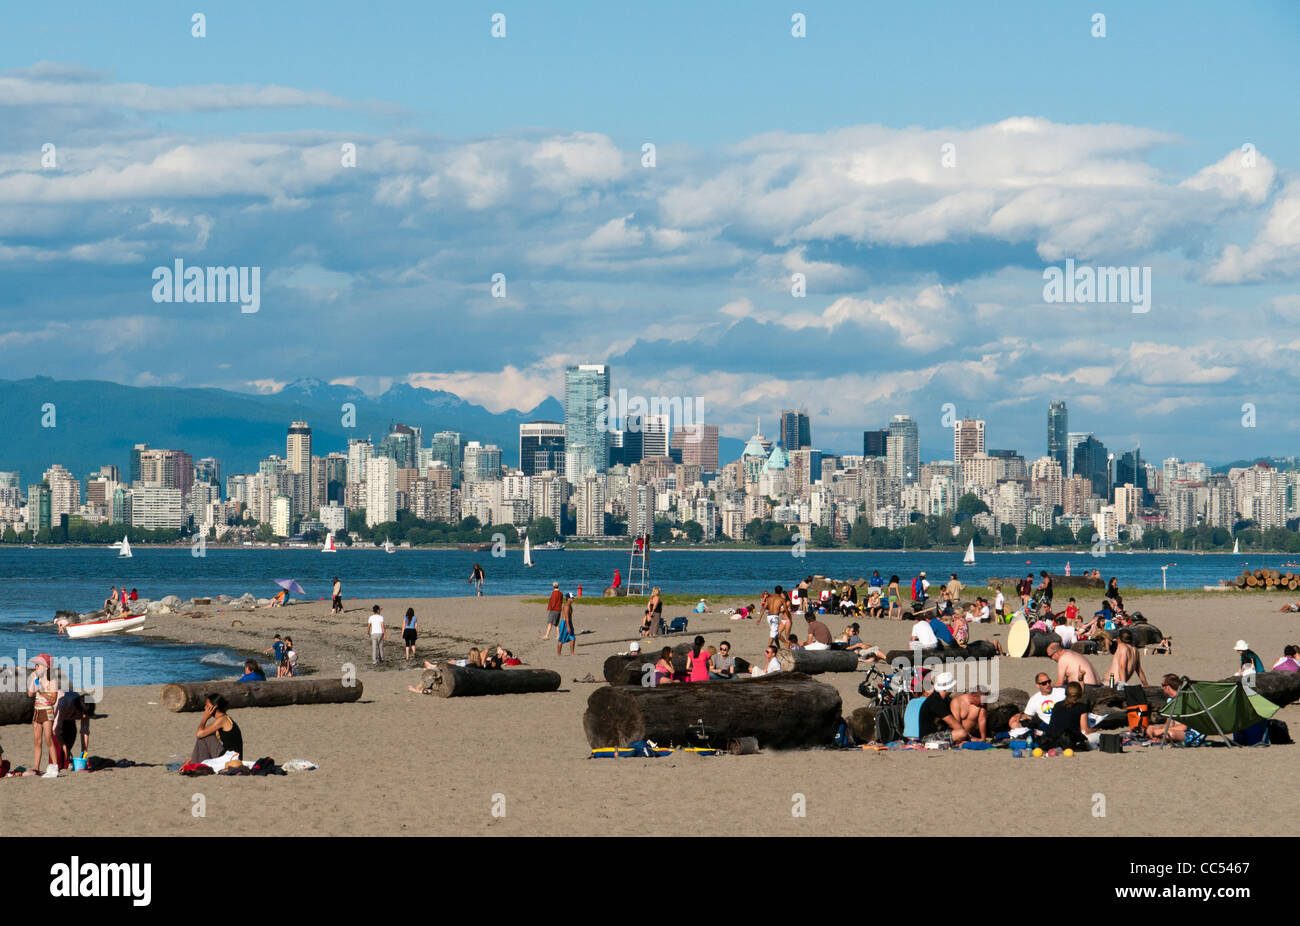 Les gens sur une plage au centre-ville de Vancouver skyline en arrière-plan Canada Banque D'Images